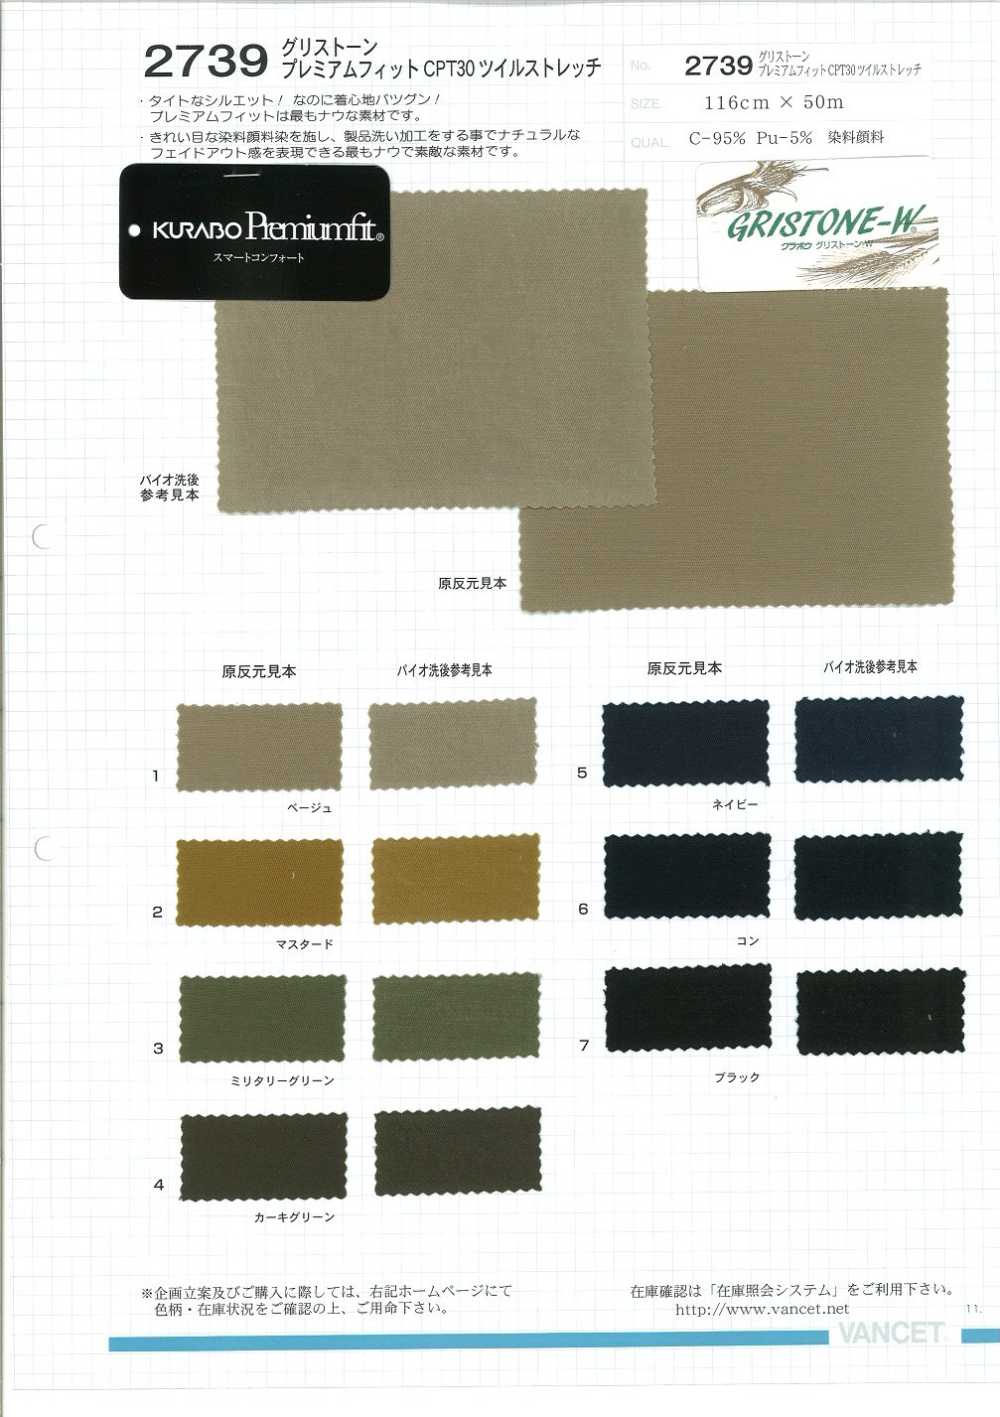 2739 Grisstone Premium Fit CPT30 Twill Stretch[Textile / Fabric] VANCET